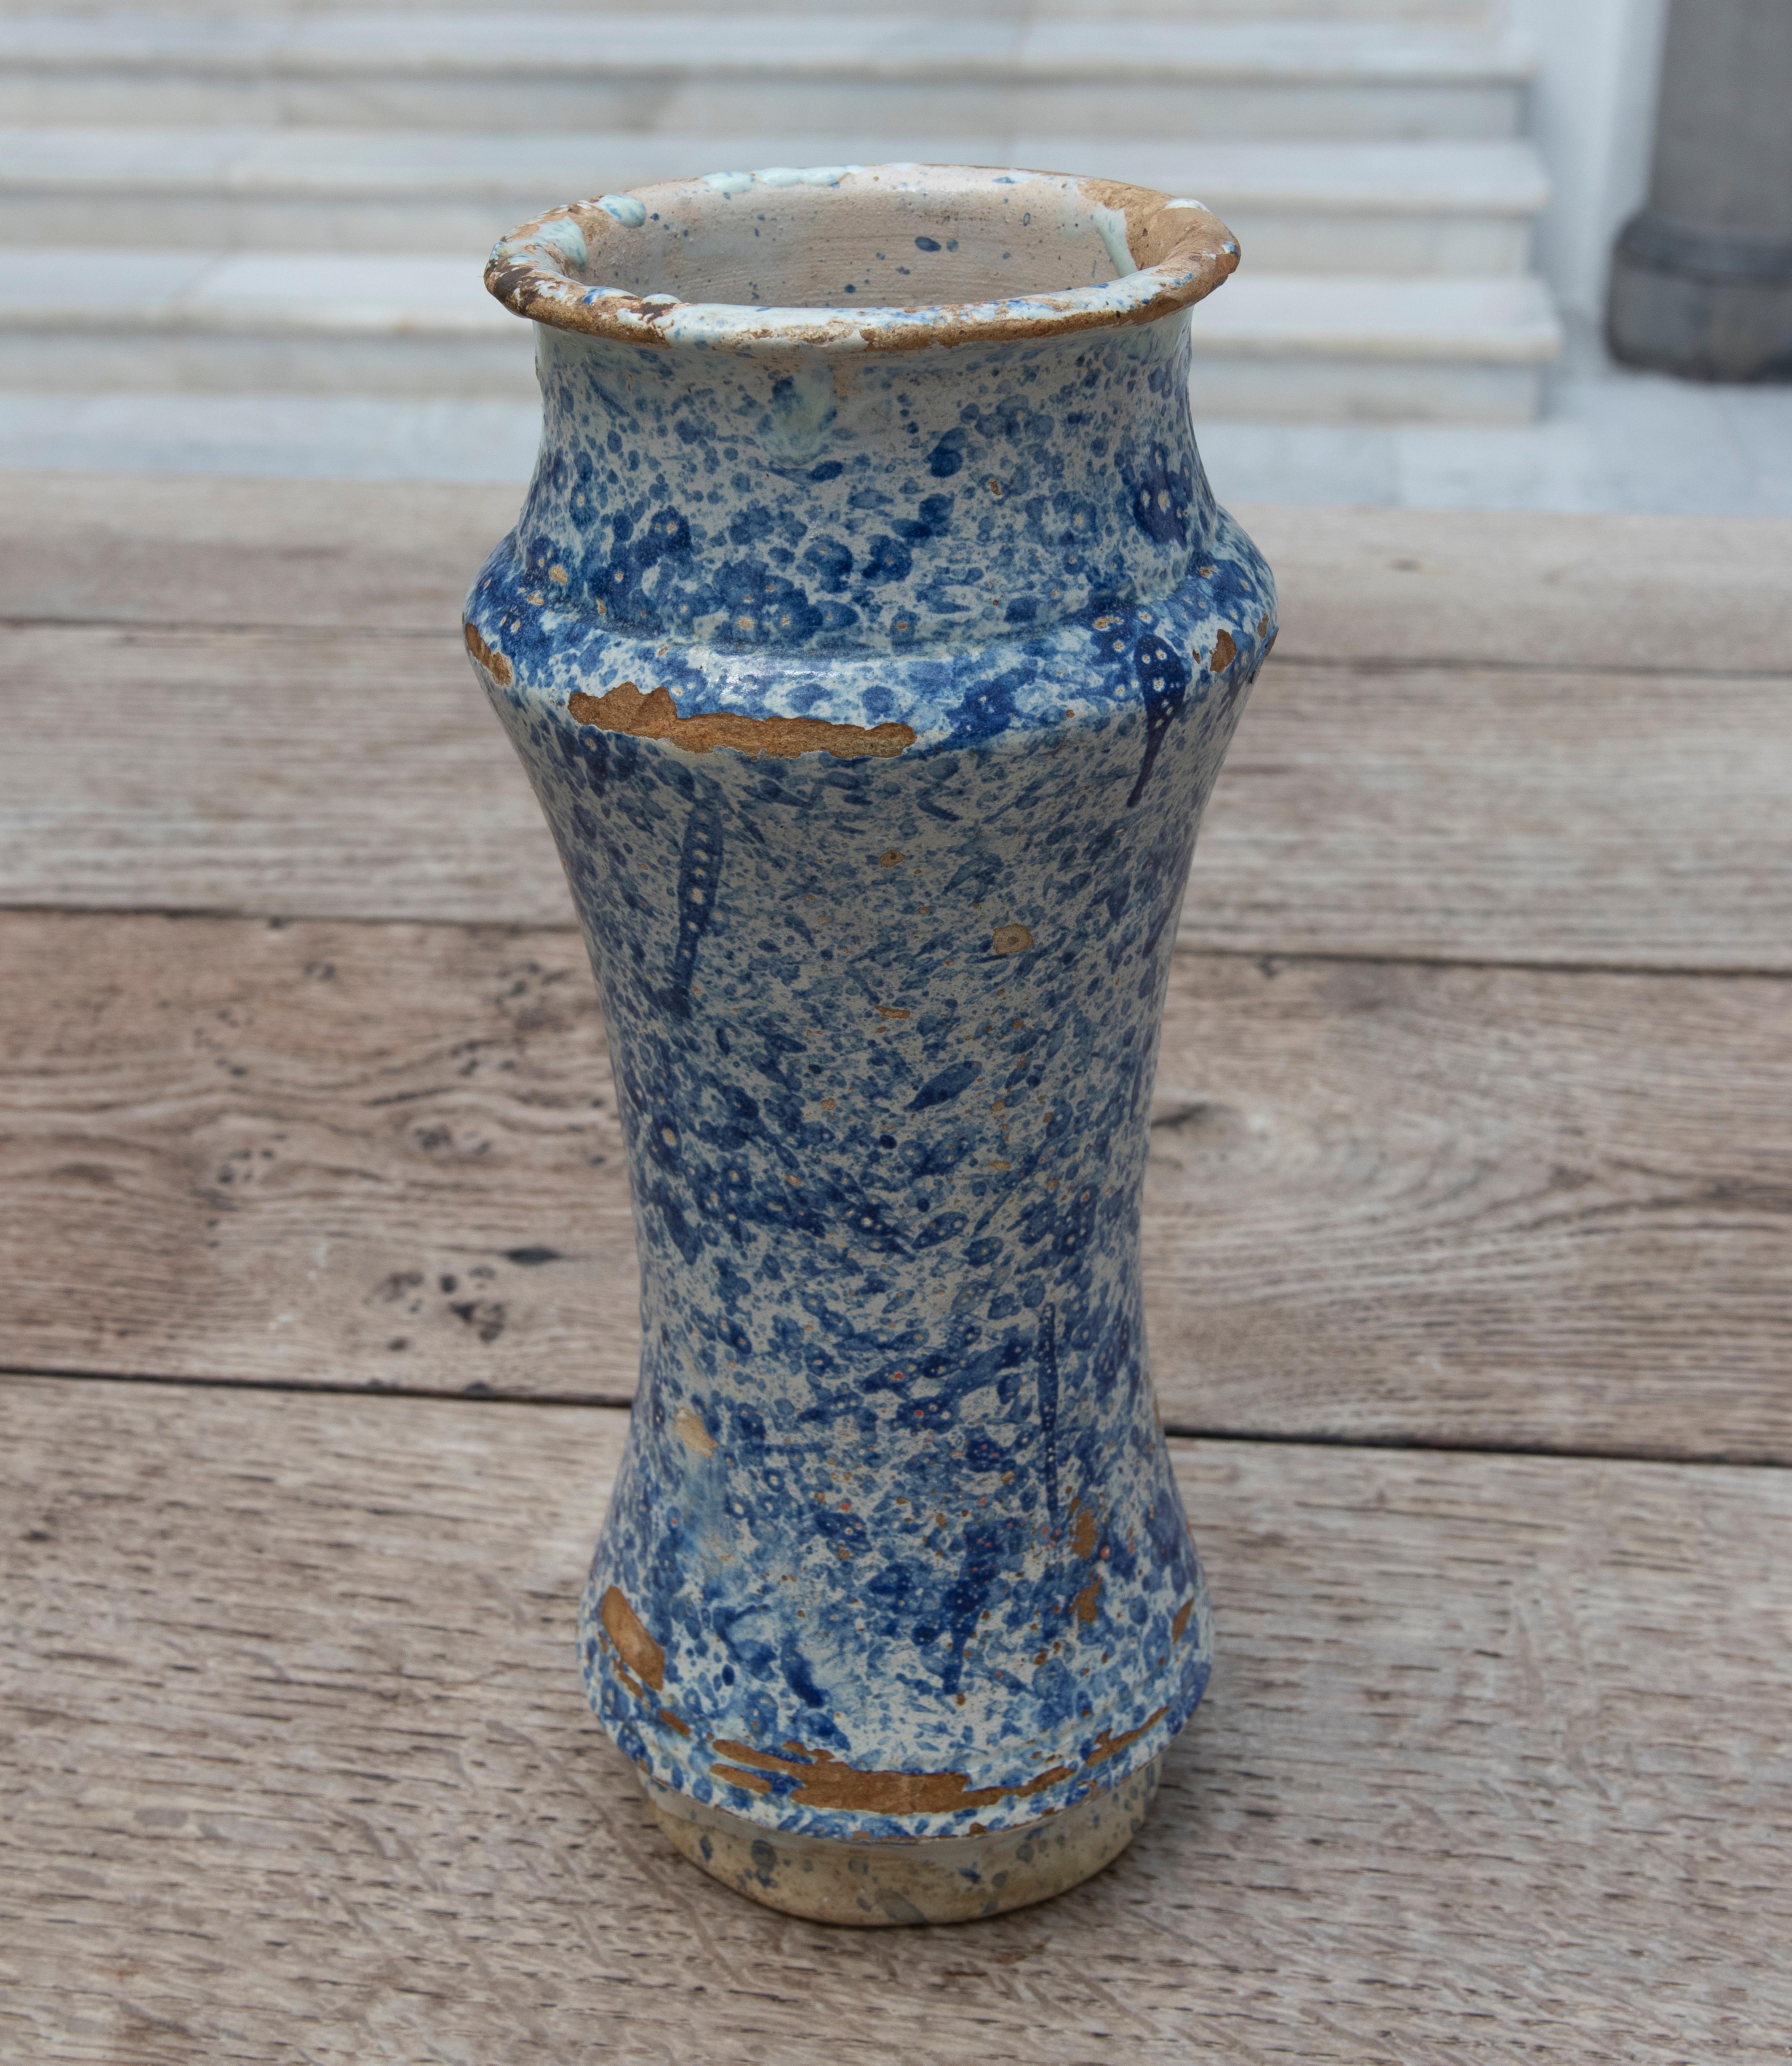 Jarre à pharmacie Talavera espagnole du 17ème siècle en céramique émaillée bleue.